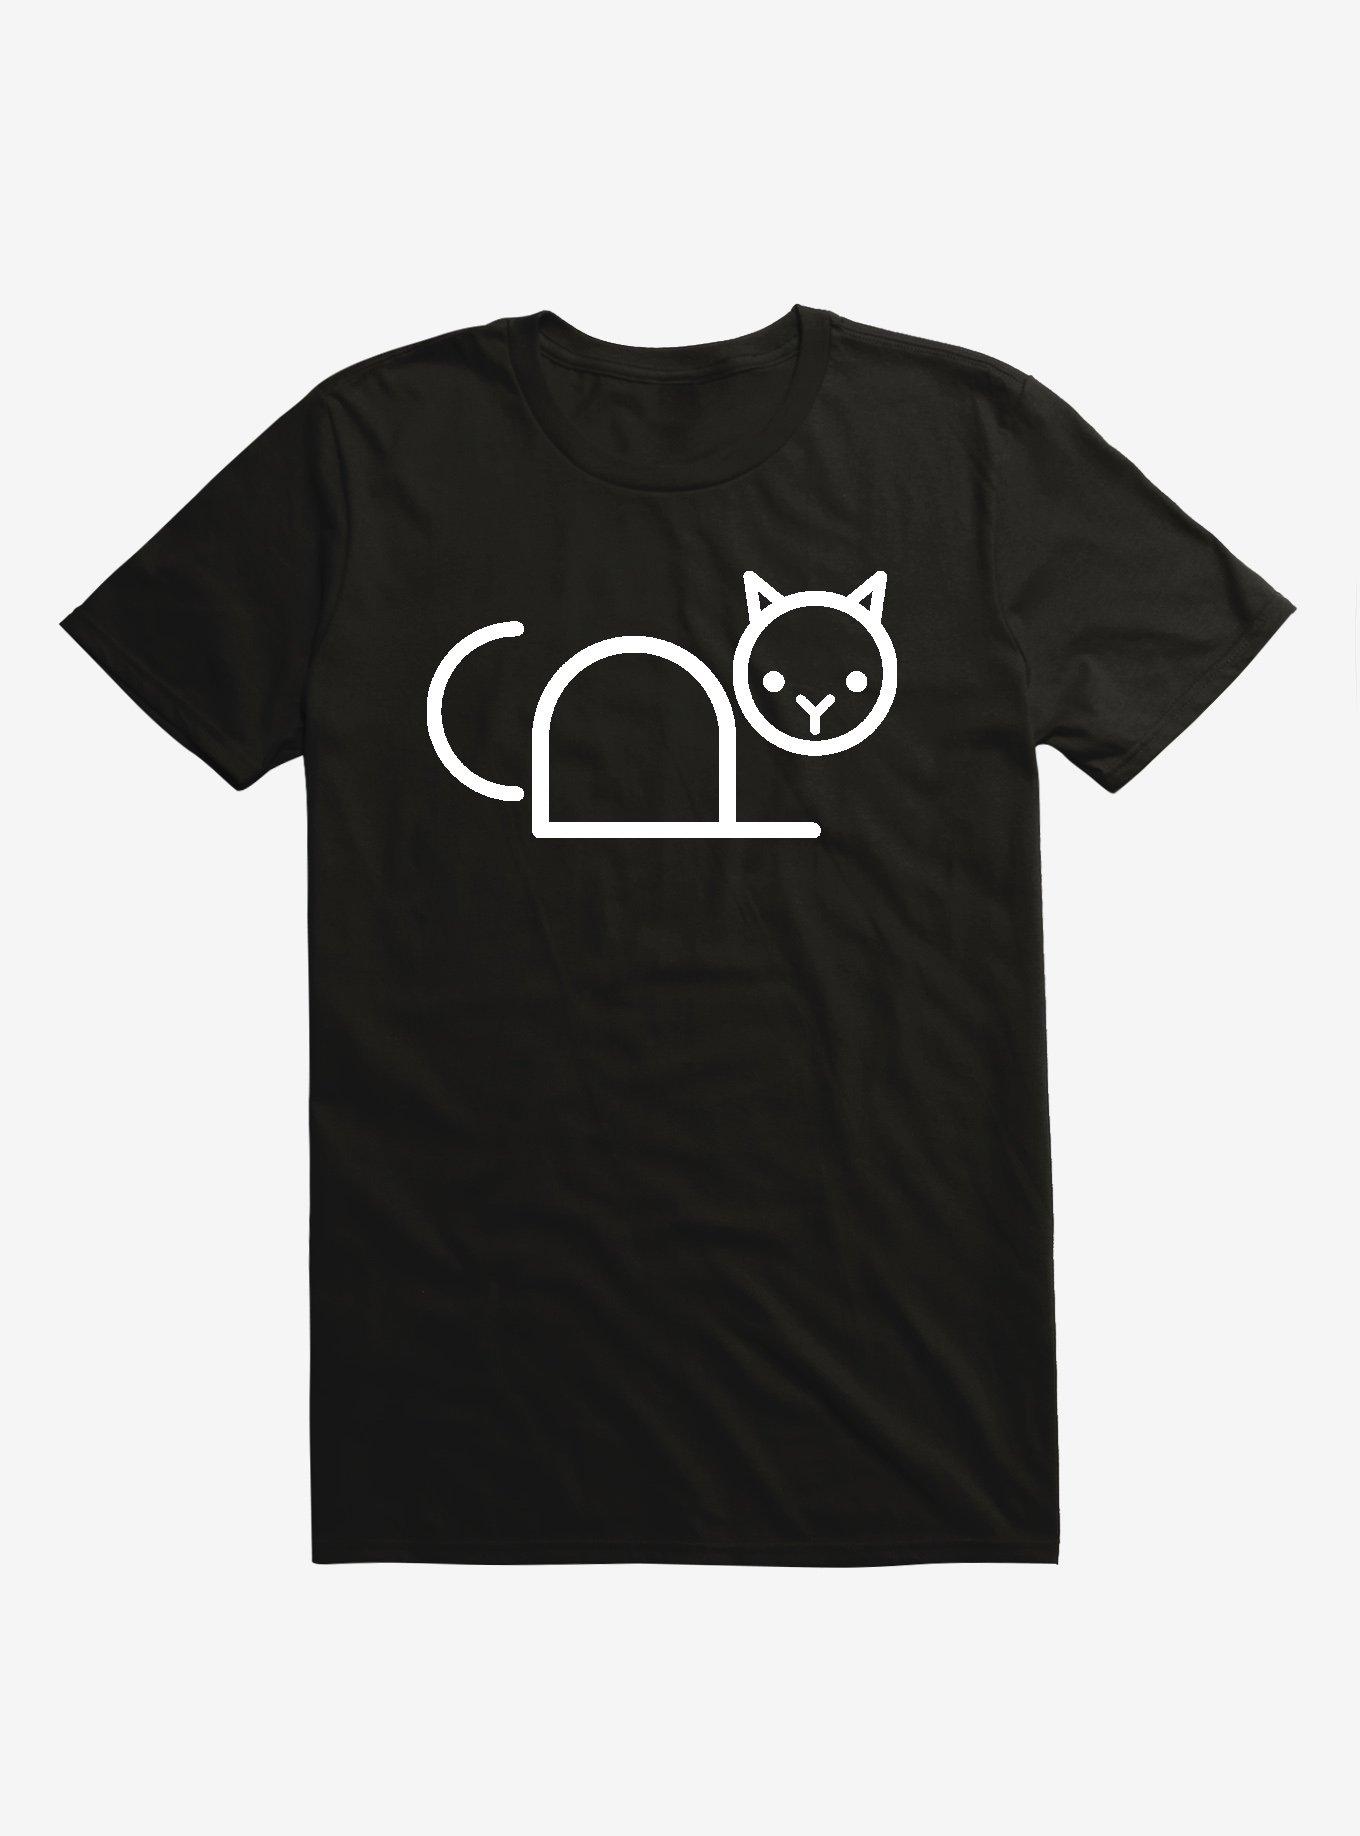 Copy Cat Black T-Shirt - BLACK | Hot Topic